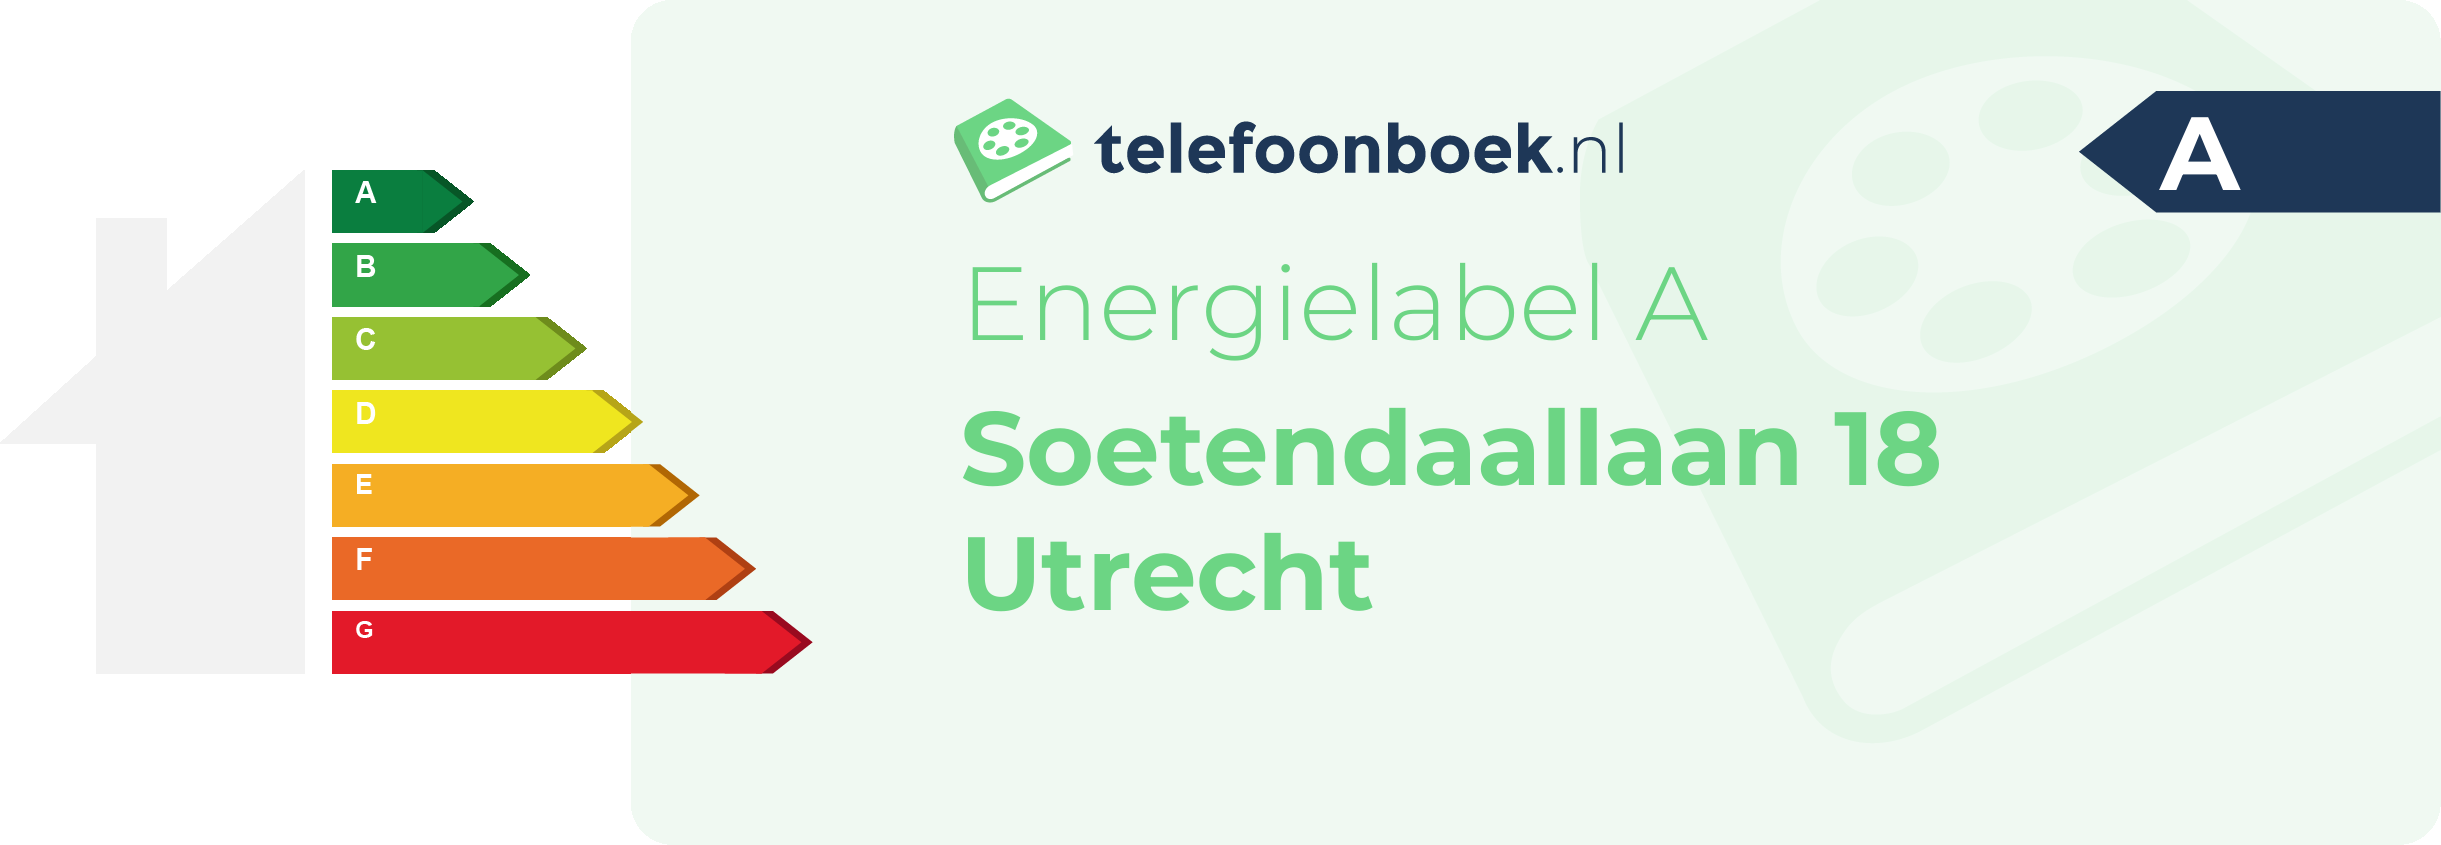 Energielabel Soetendaallaan 18 Utrecht